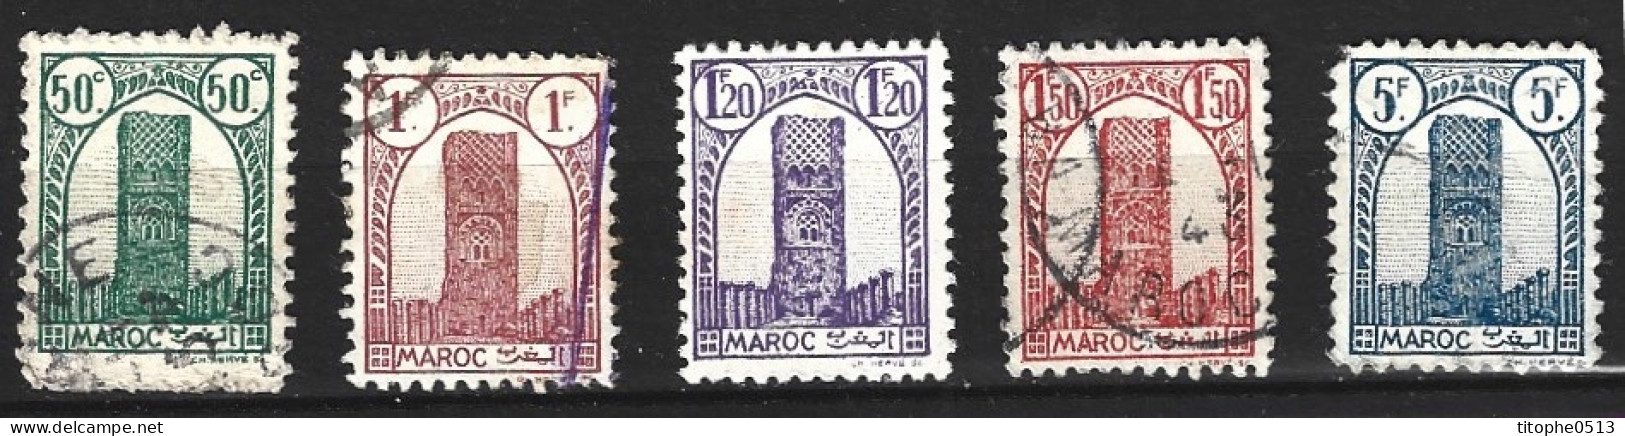 MAROC. Timbres Oblitérés De 1943-4. Tour Hassan. - Usados